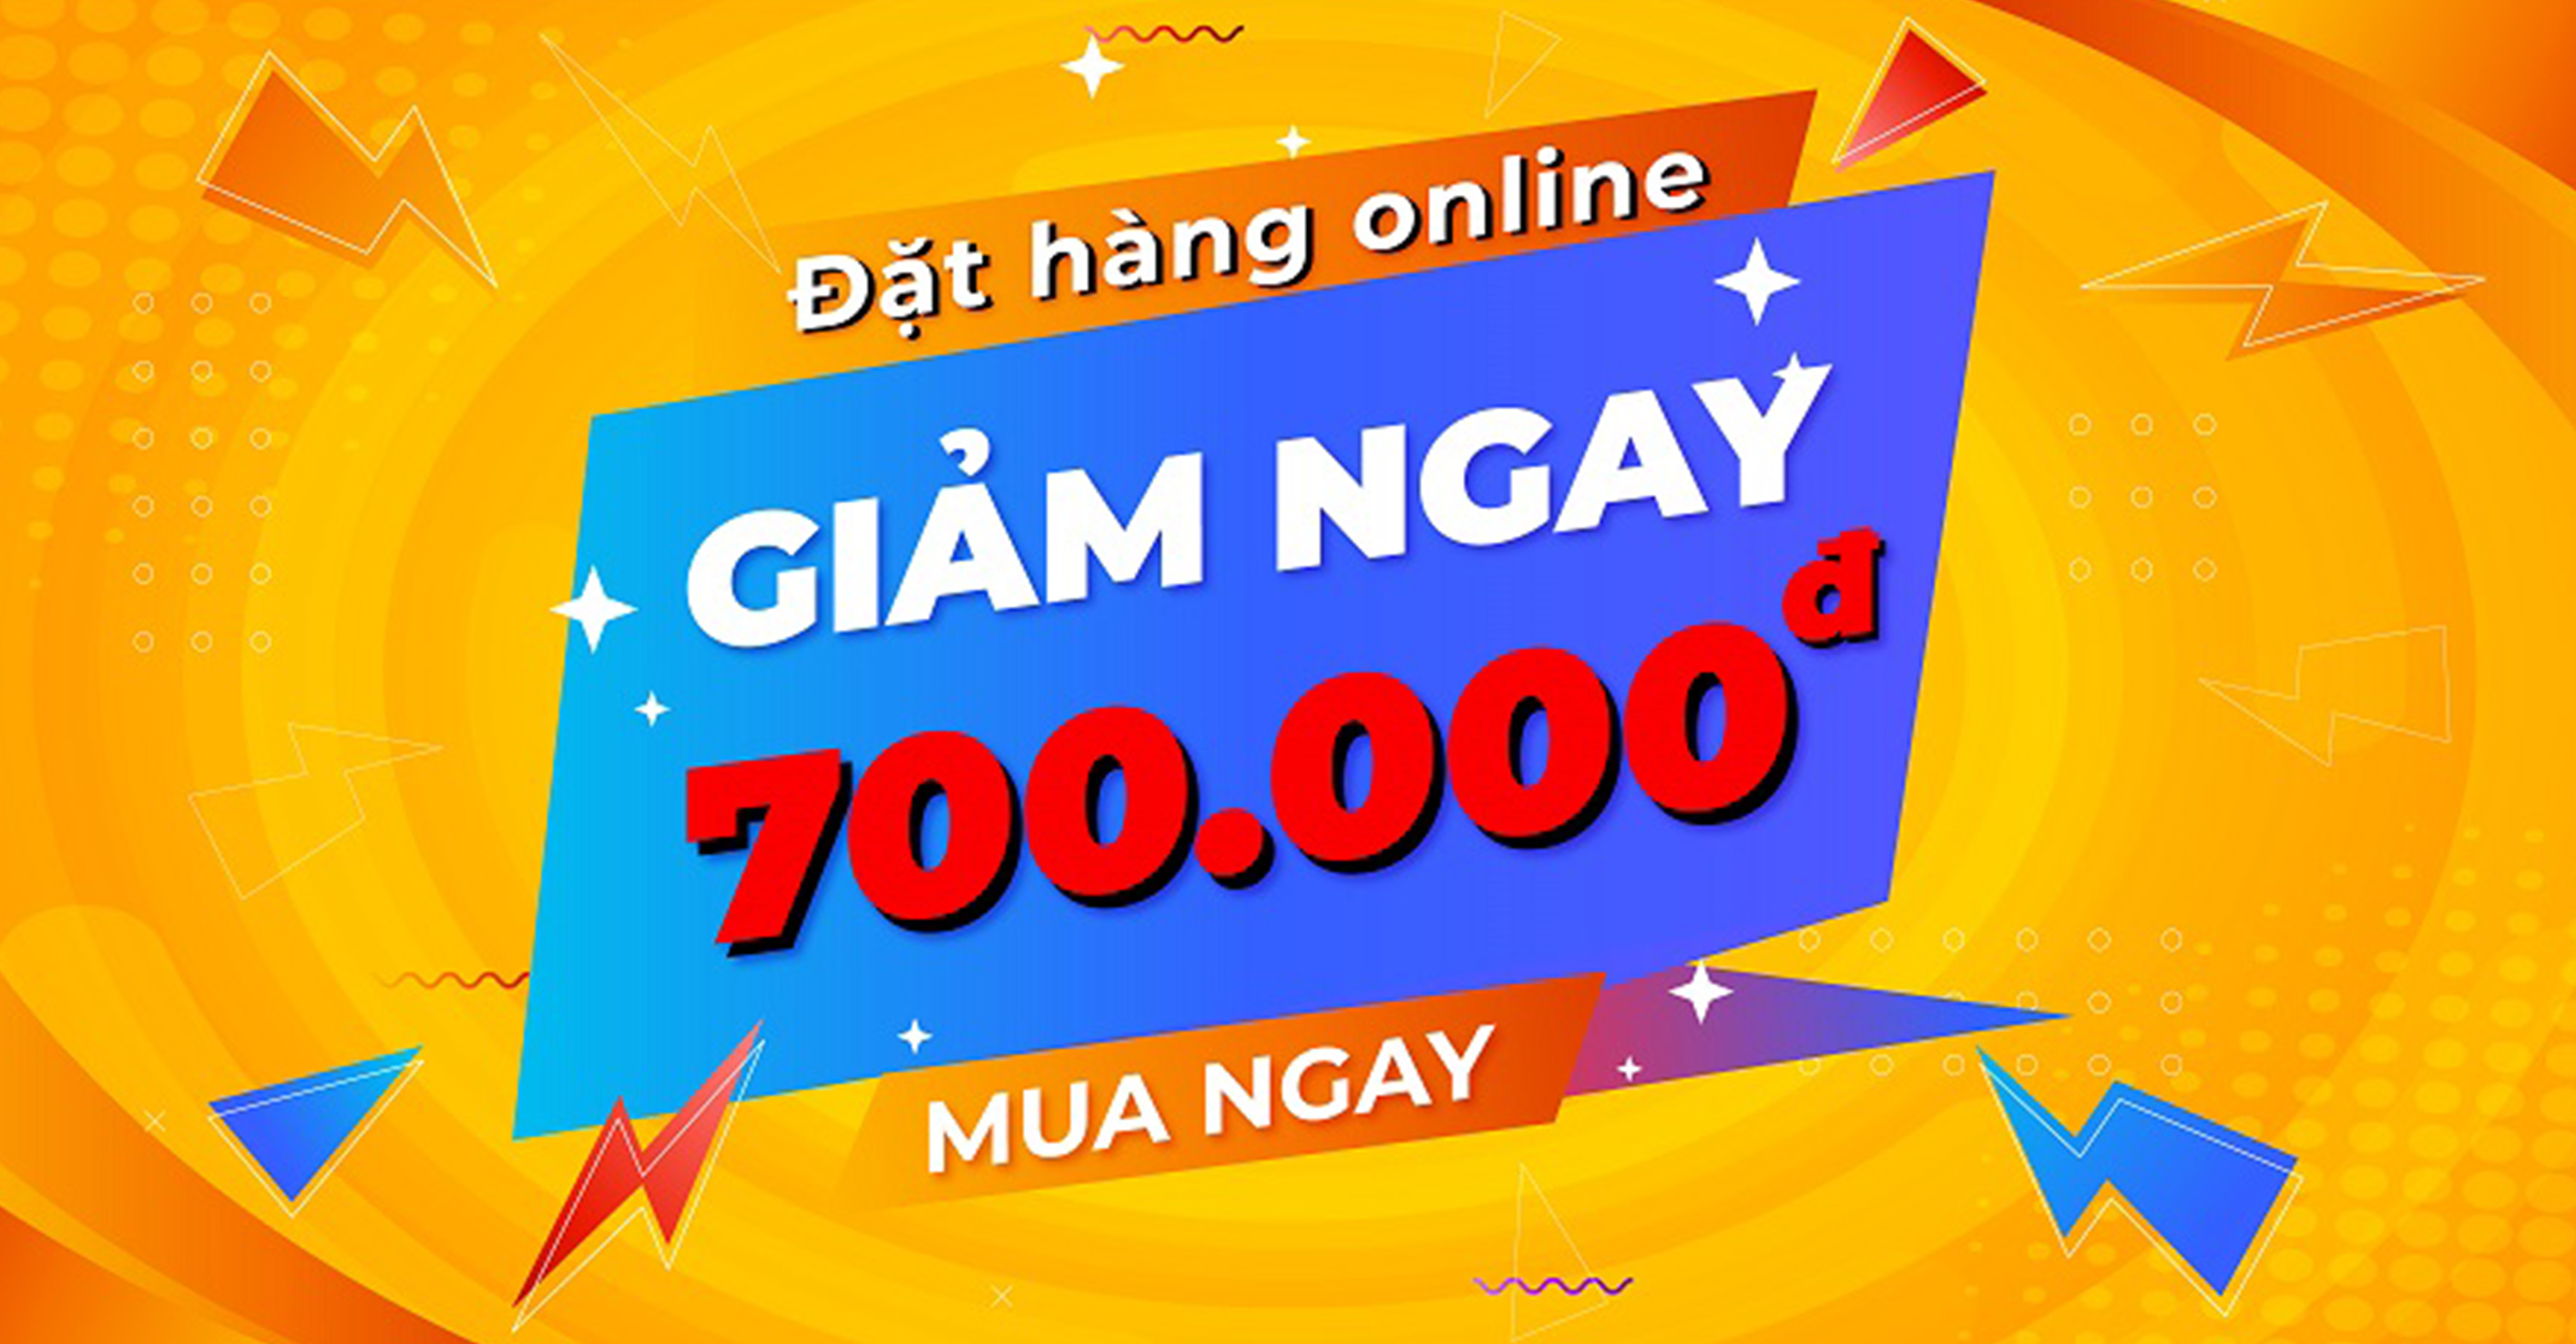 ĐẶT HÀNG ONLINE QUA WEBSITE GIẢM NGAY 700.000 VNĐ